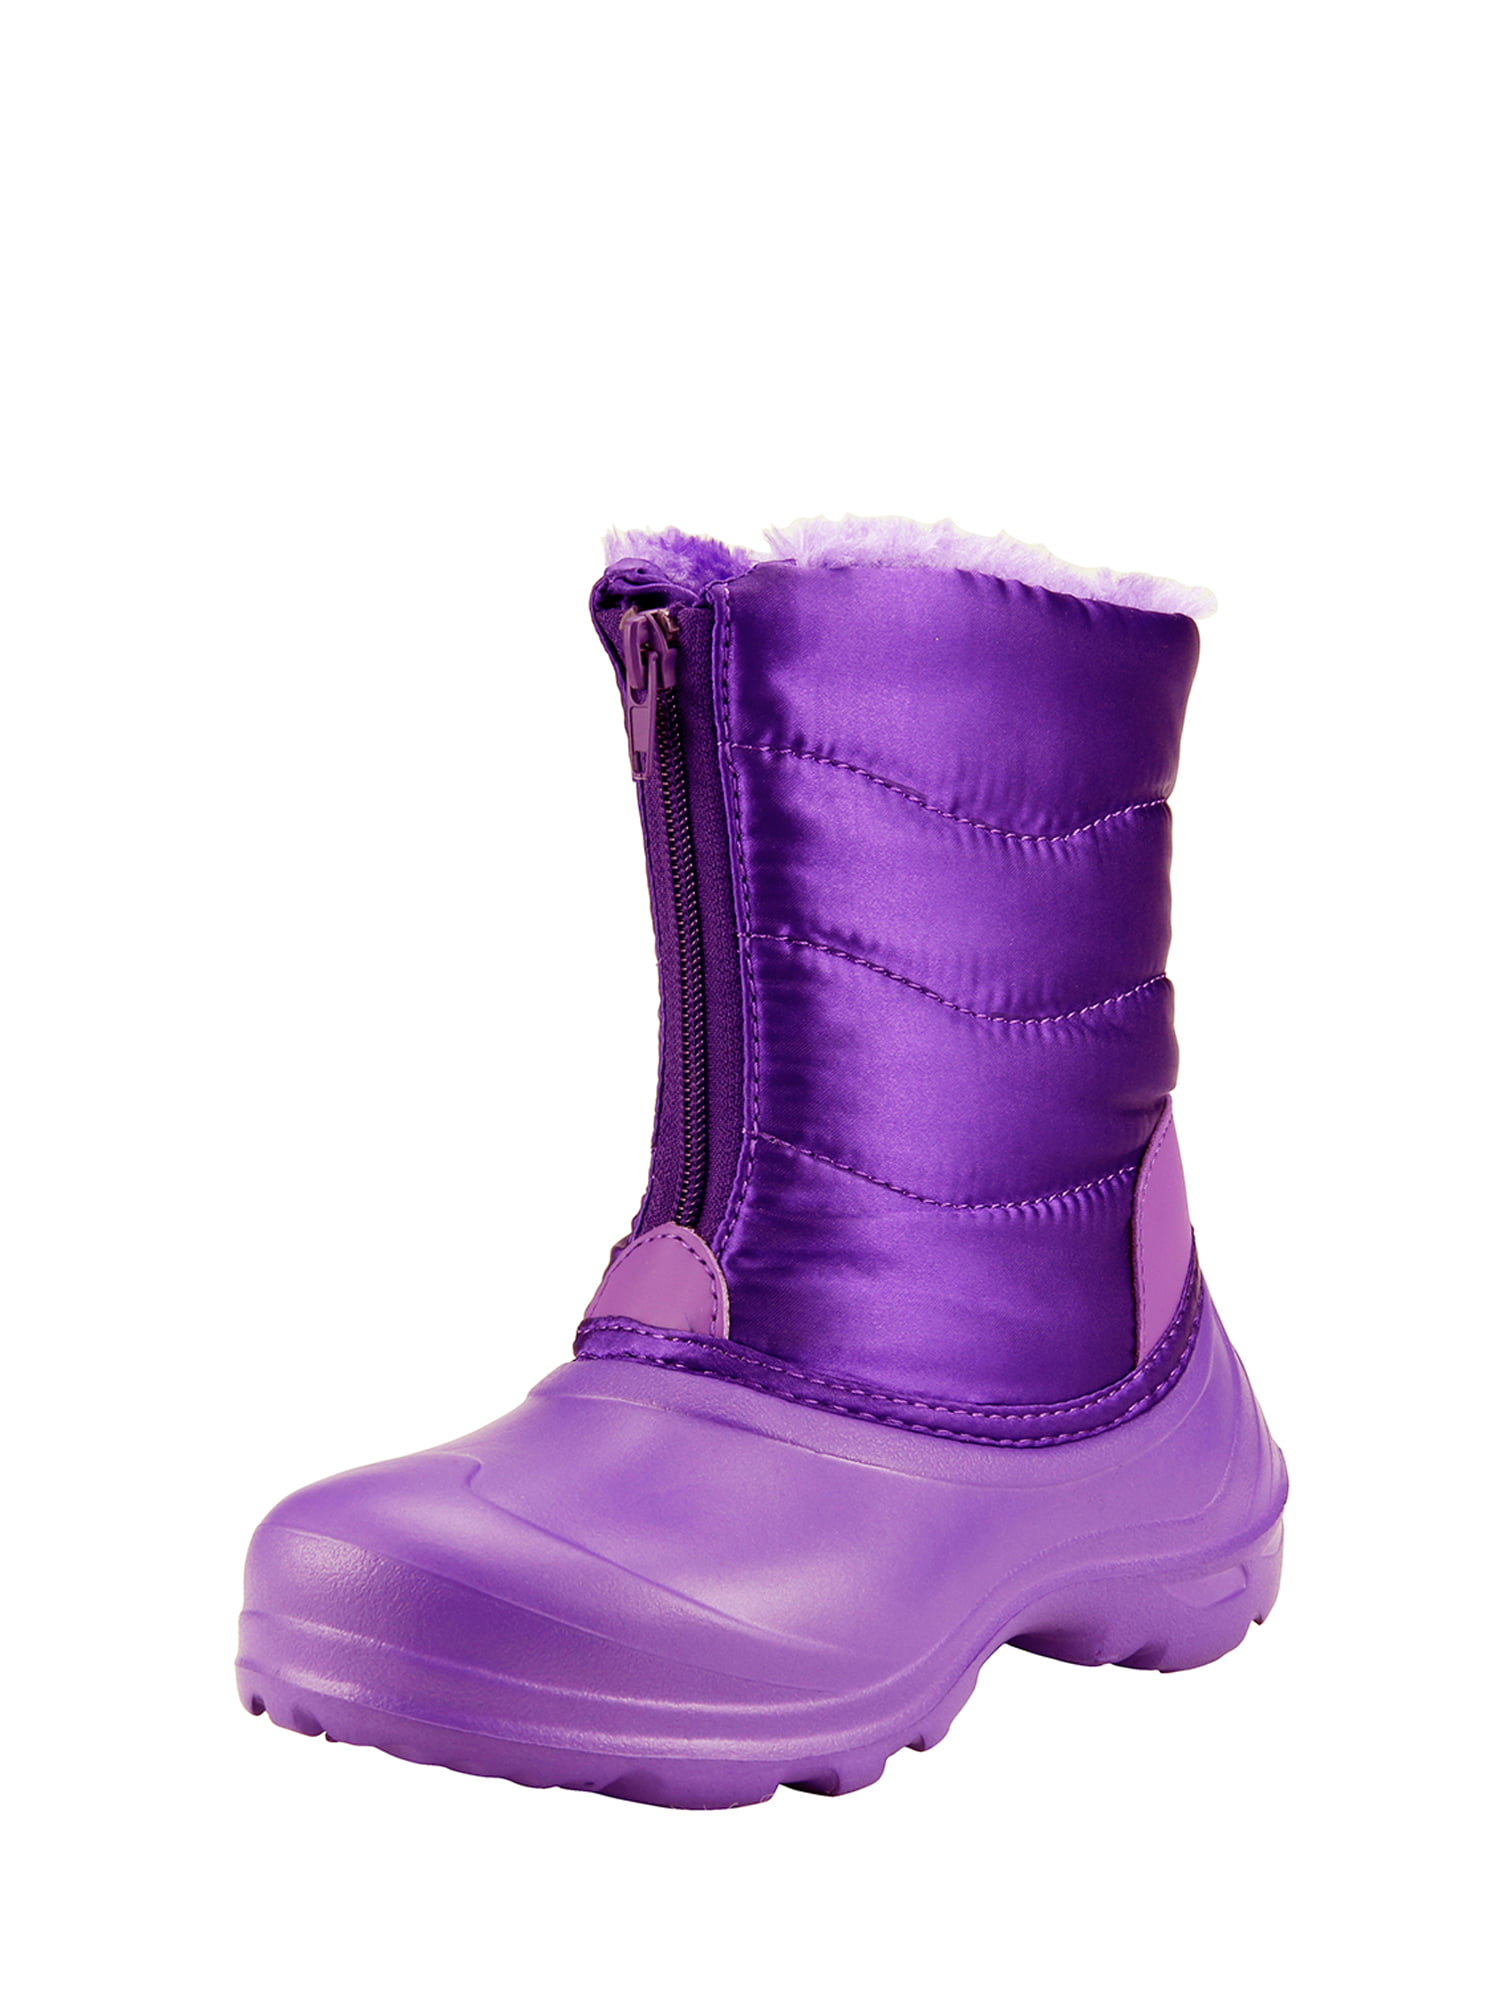 walmart childrens winter boots